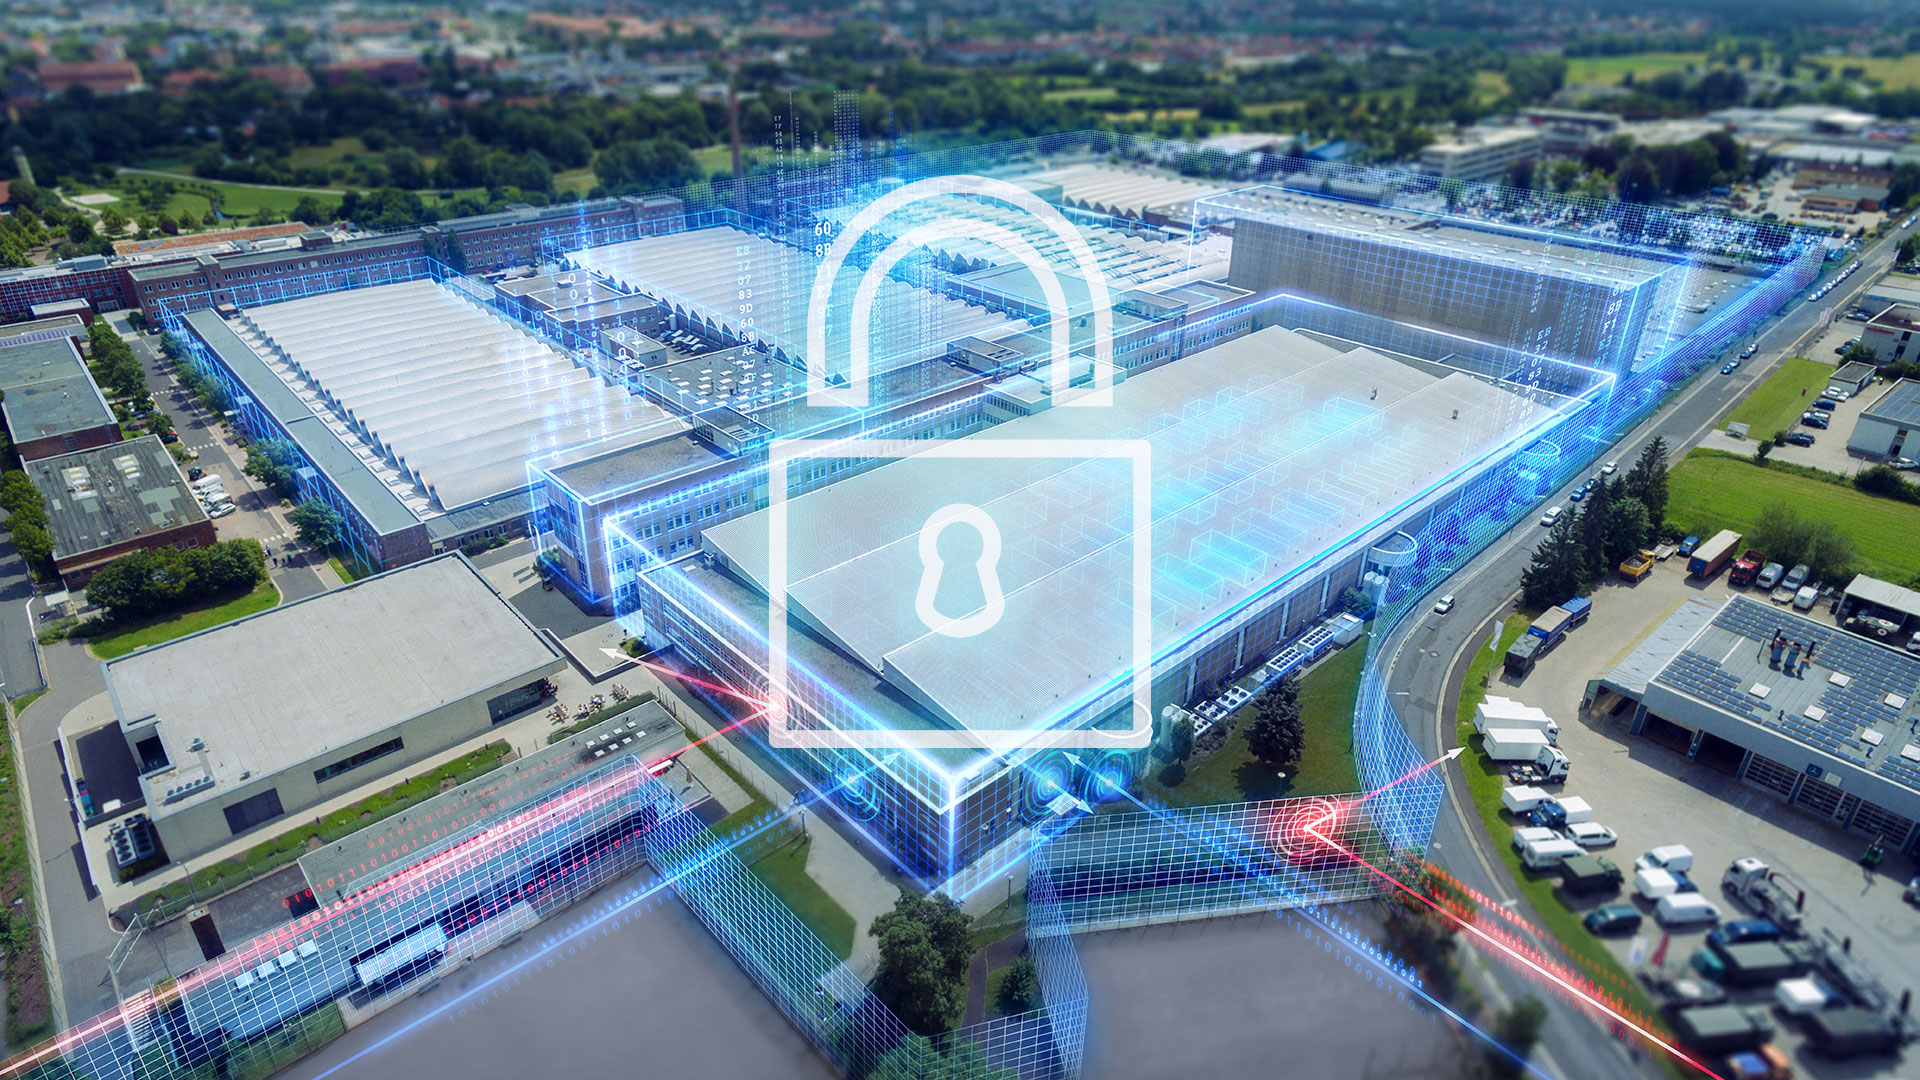 Leonardo i Siemens współpracują nad nową zintegrowaną platformą ofertową w zakresie bezpieczeństwa cyfrowego, dedykowaną infrastrukturze przemysłowej